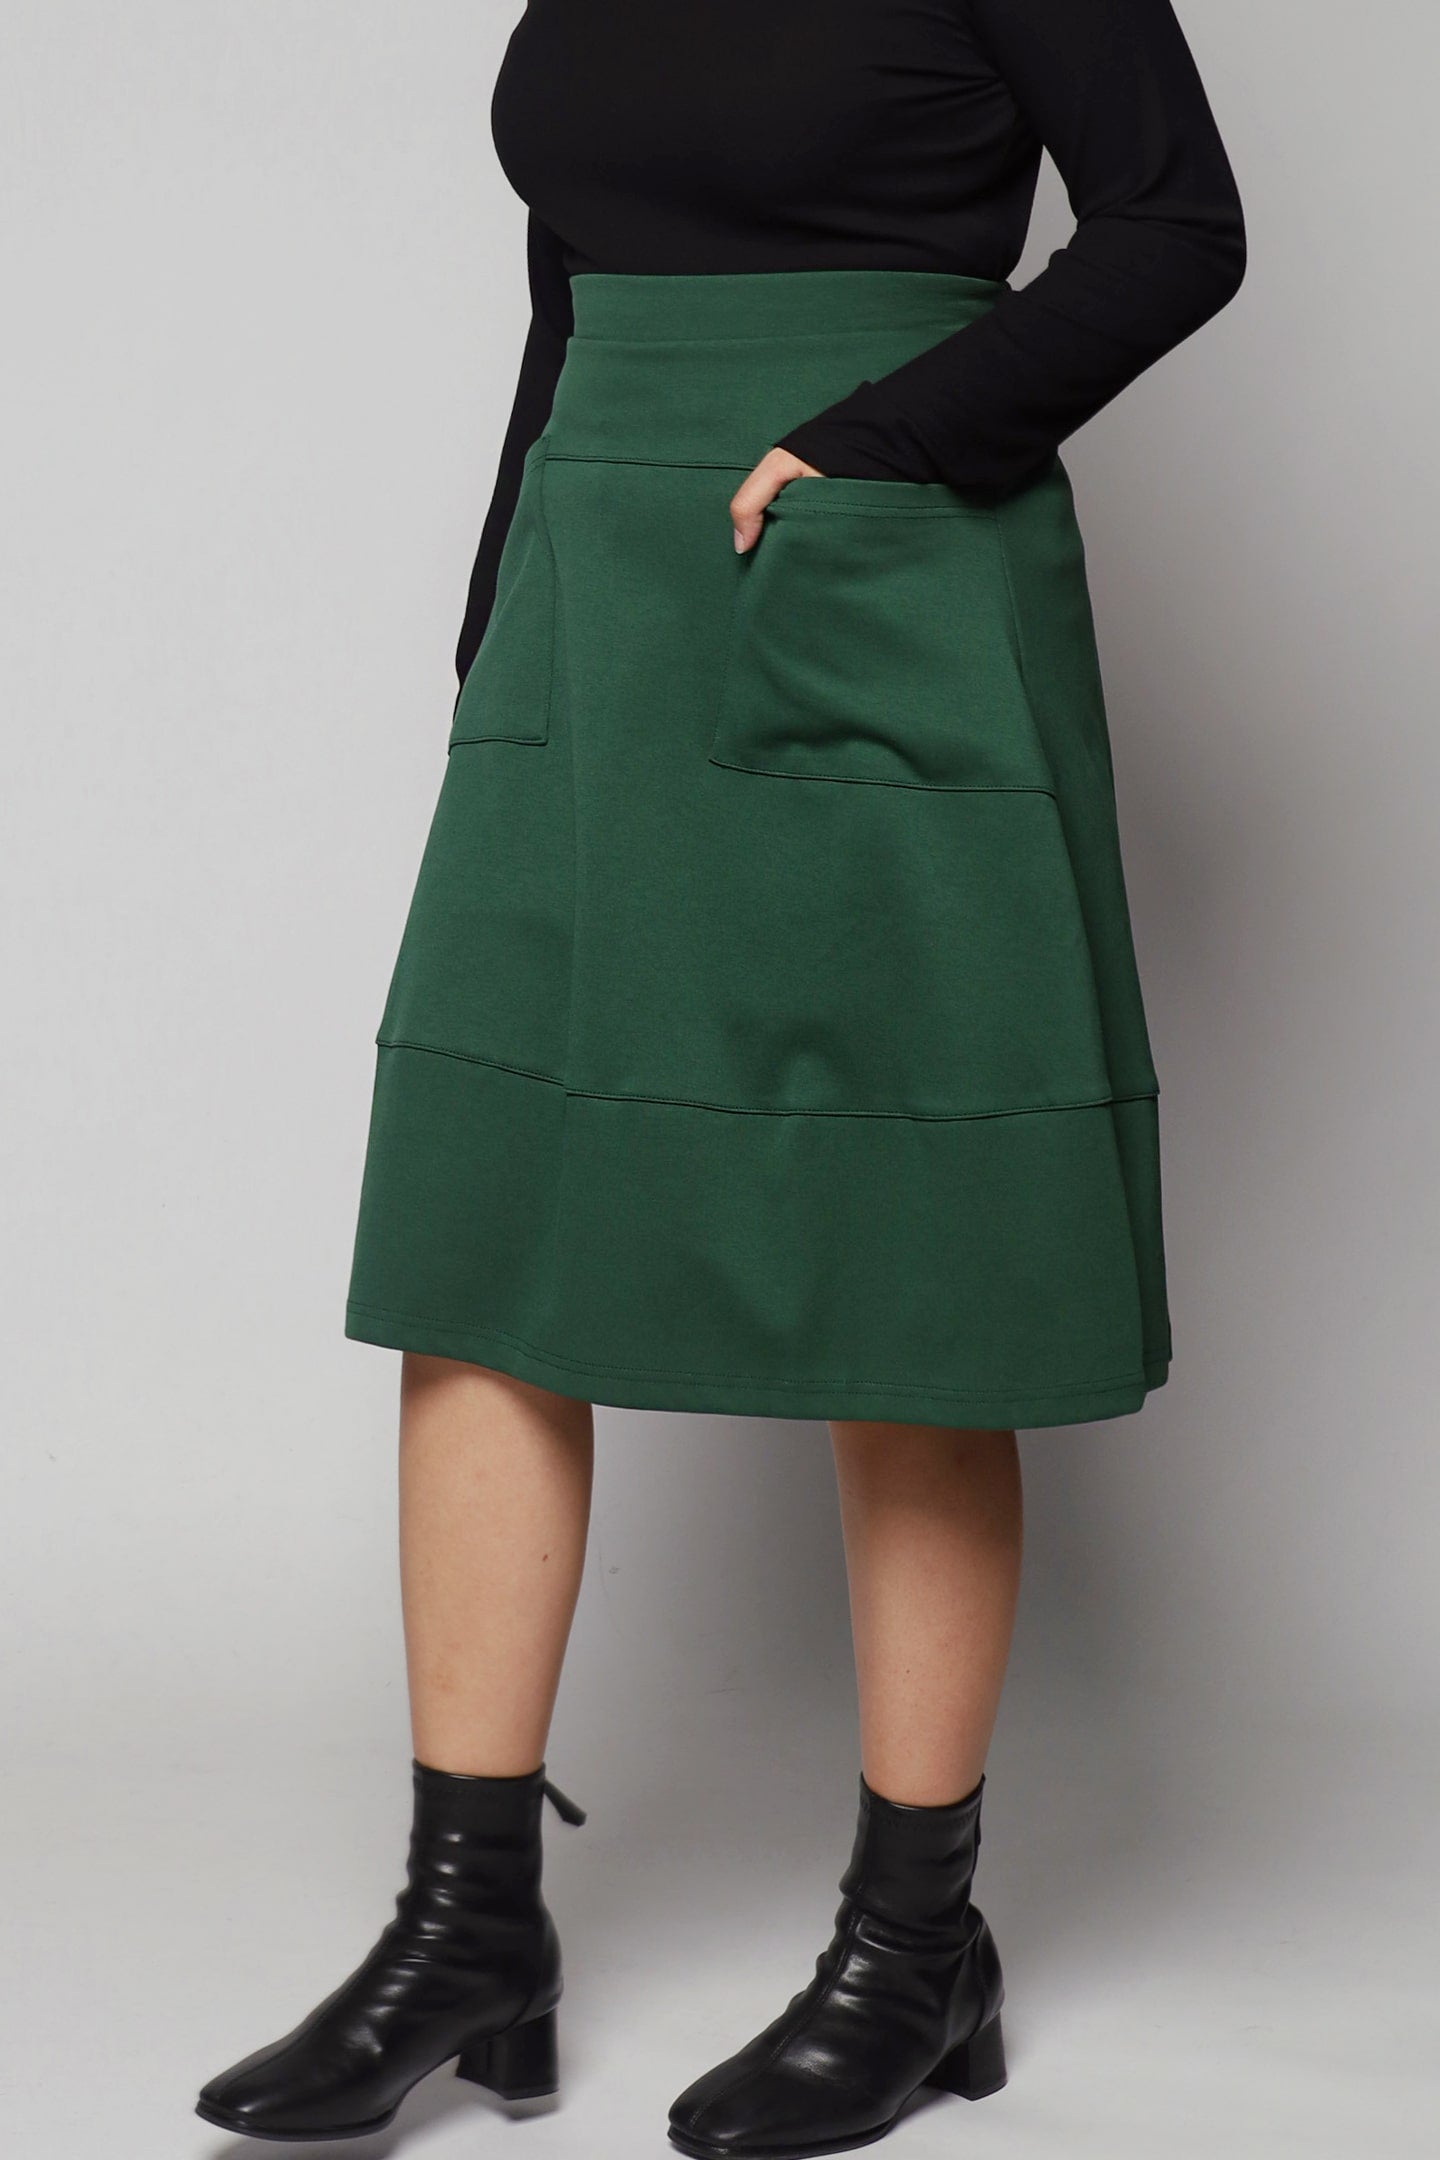 Ebenezer Skirt in Green